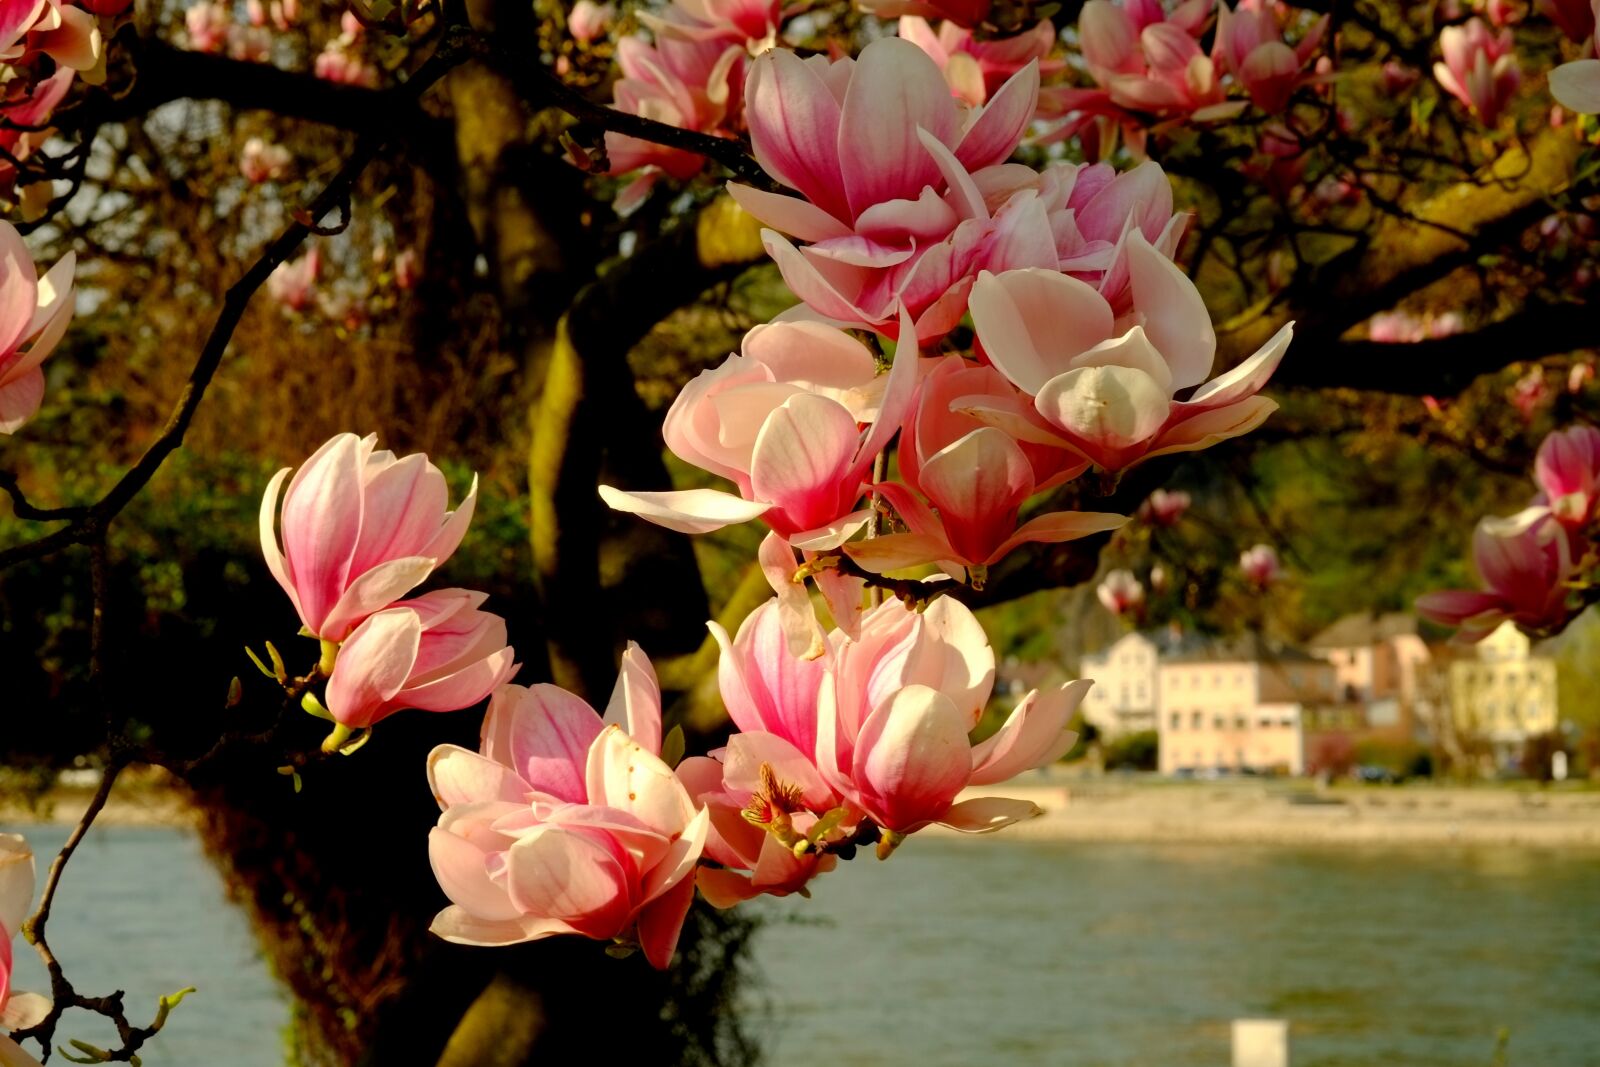 Fujifilm X-E1 sample photo. Magnolia, magnolia tree, spring photography